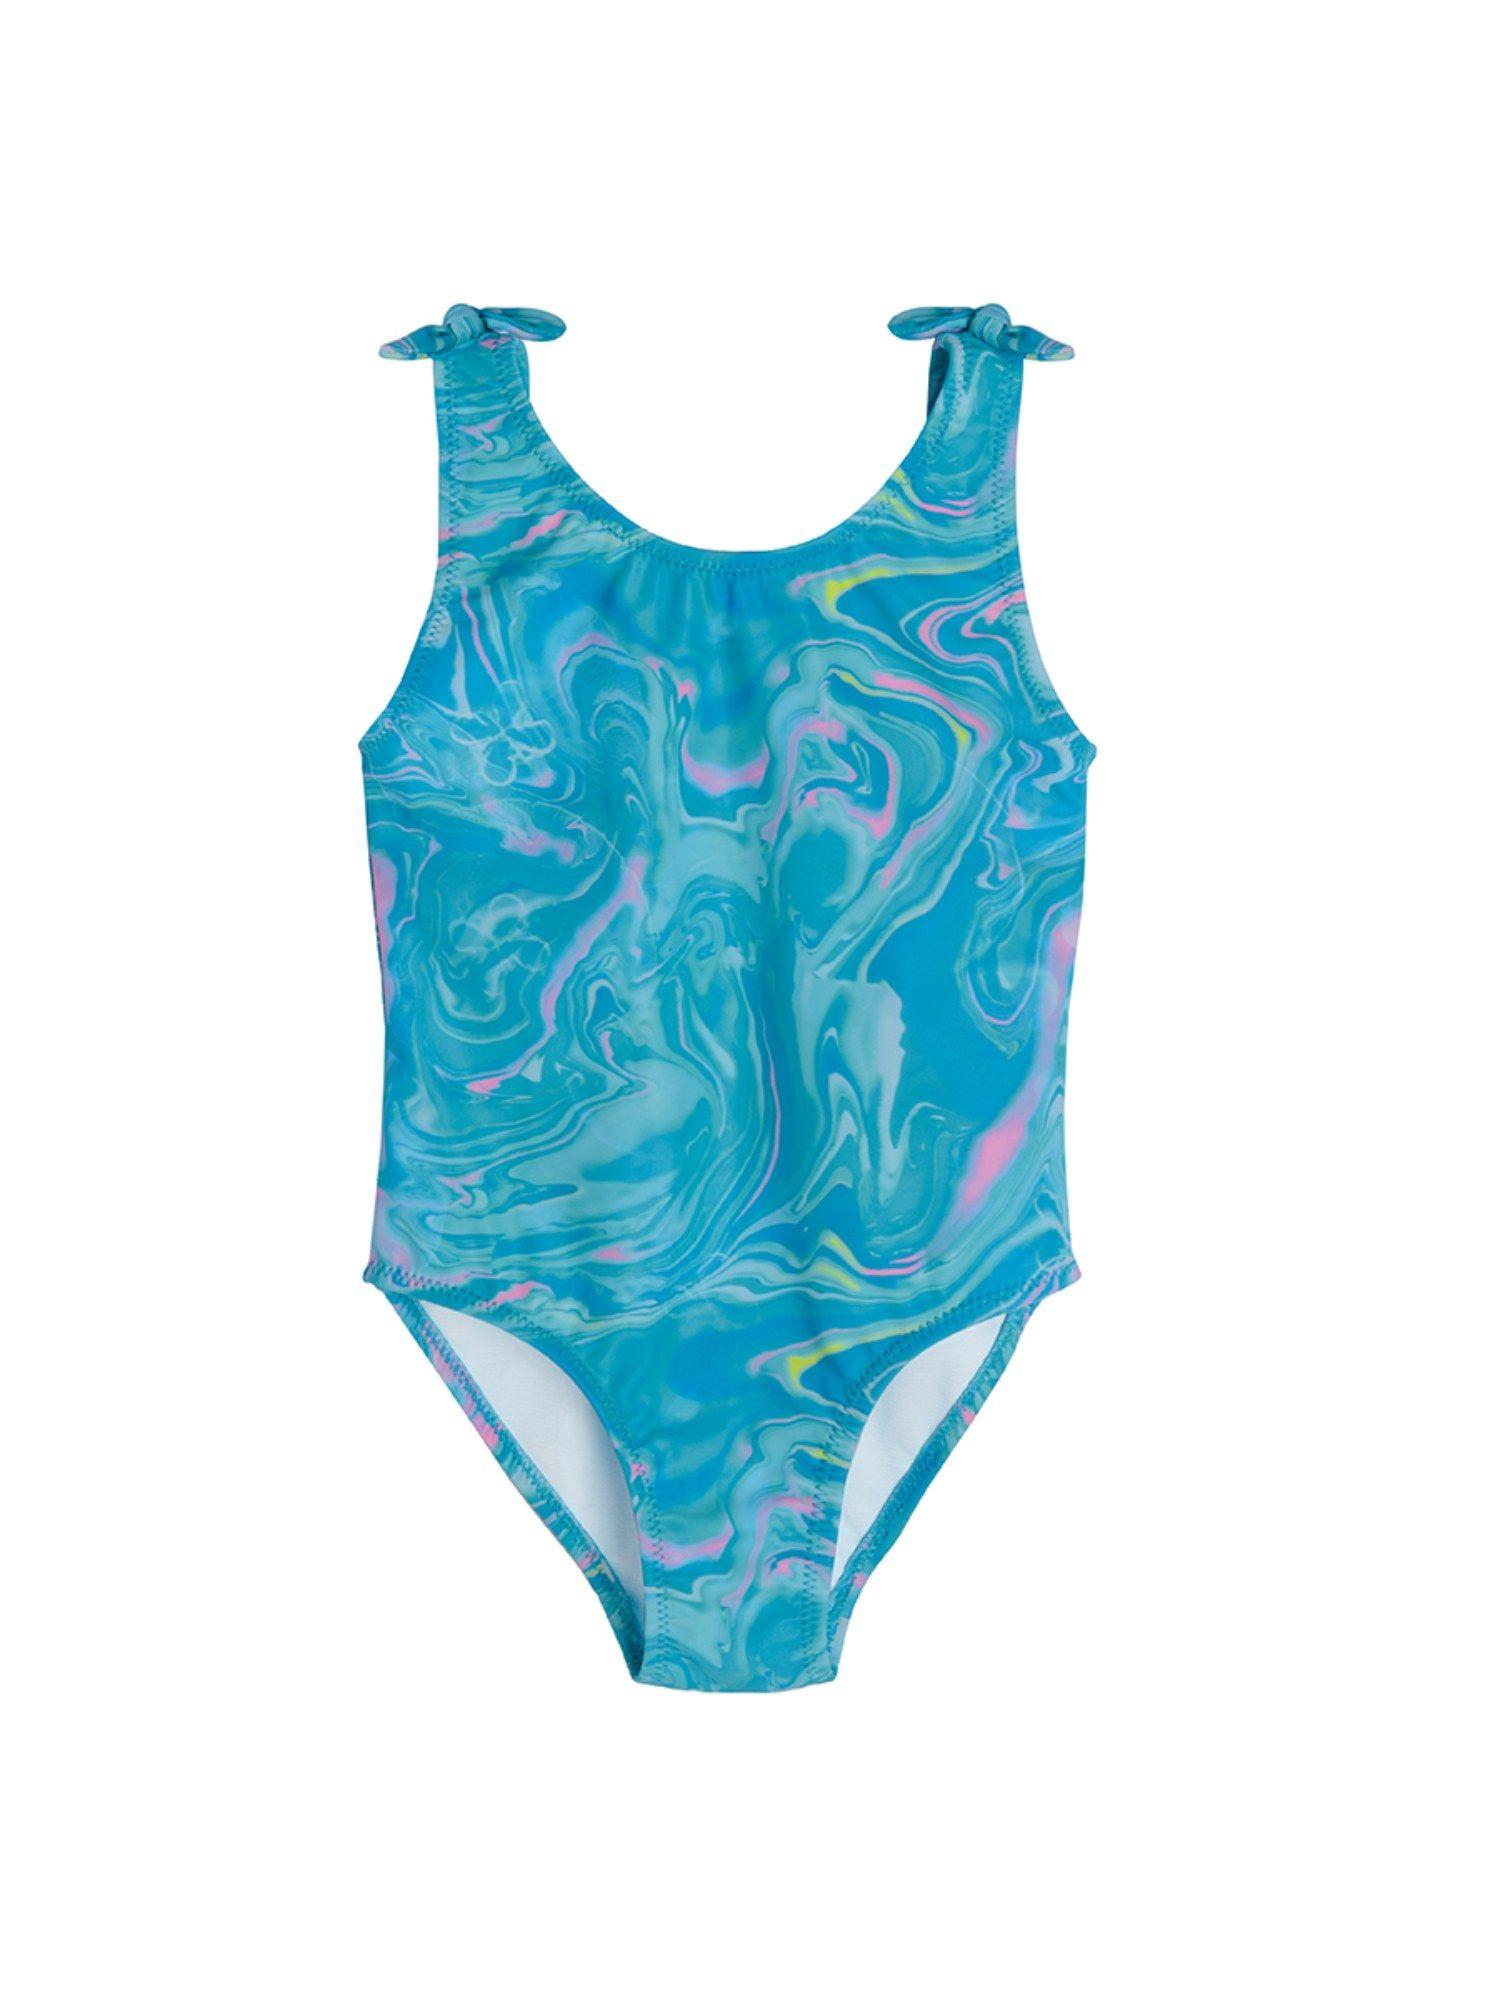 Smyk Girls Blue Printed Swimsuit